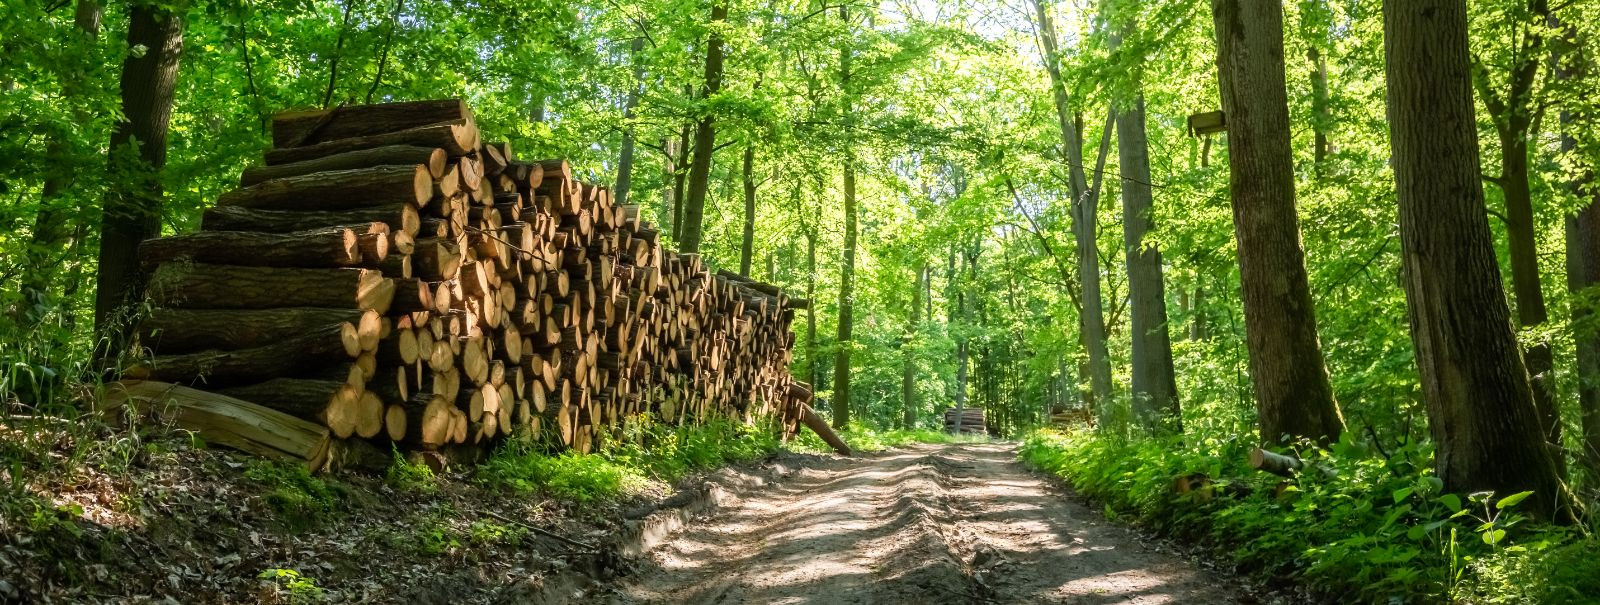 Metsaõigused viitavad seaduslikele lubadele või litsentsidele, mis võimaldavad üksikisikutel või ettevõtetel teatud maa-alalt puitu raiuda. Neid õigusi saab müü